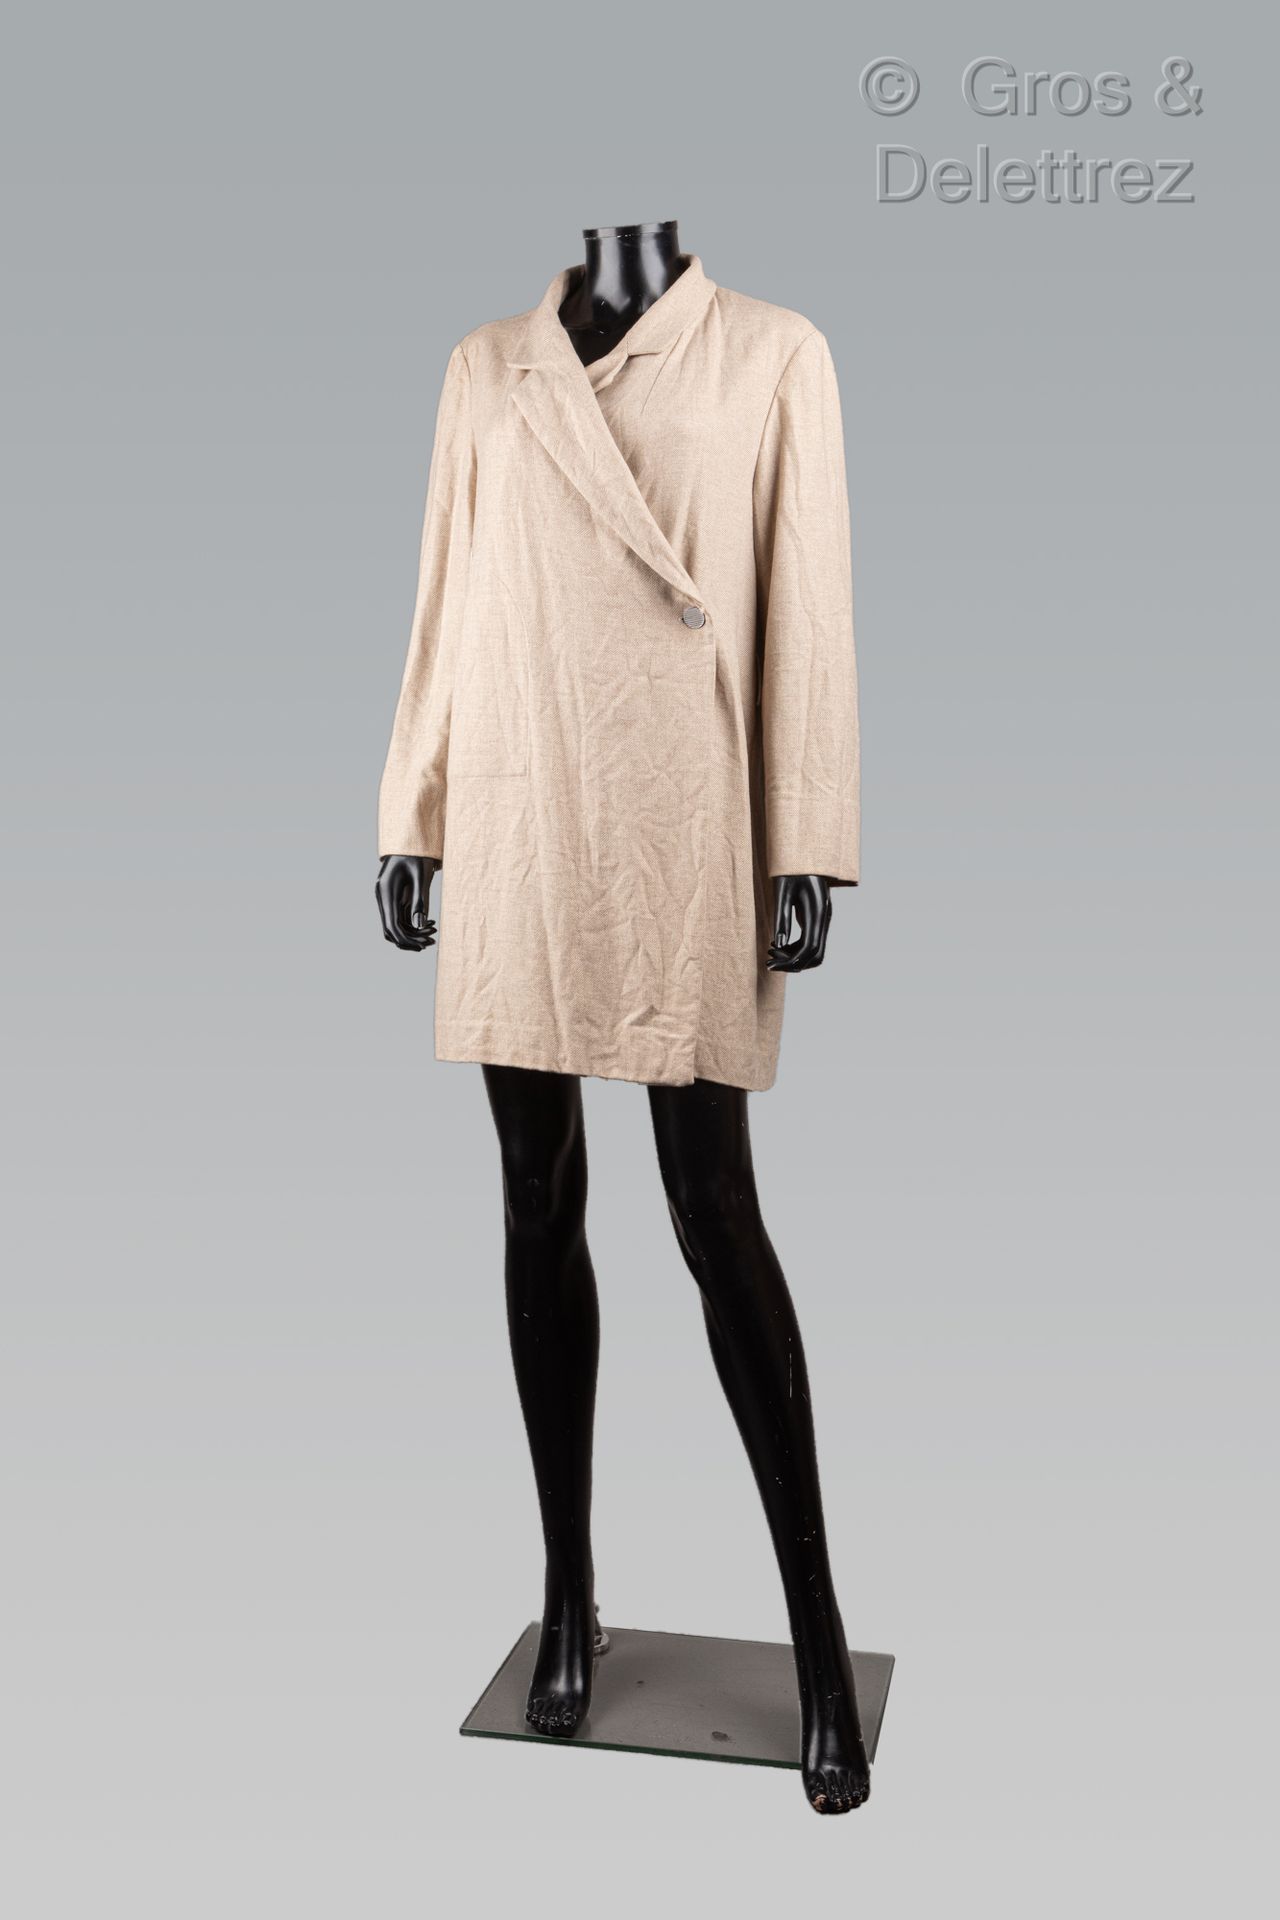 Null CHANEL di Karl Lagerfeld

Collezione Prêt-à-porter autunno/inverno 1999-200&hellip;